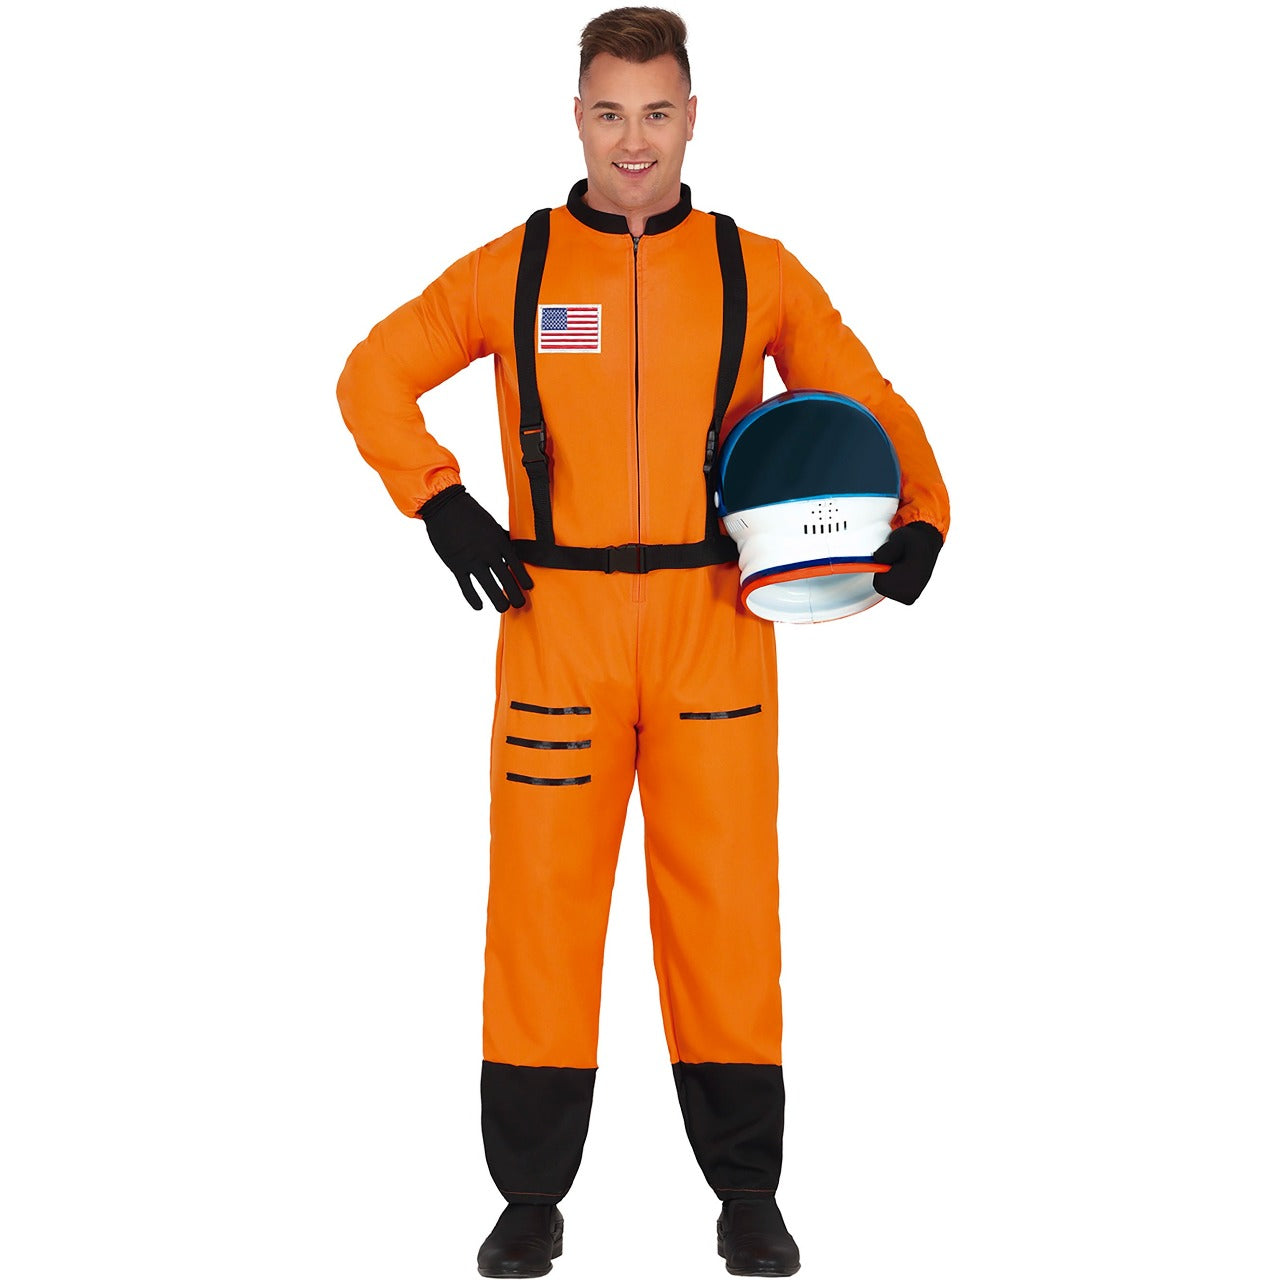 Astronaut Kostüm orange für Erwachsene